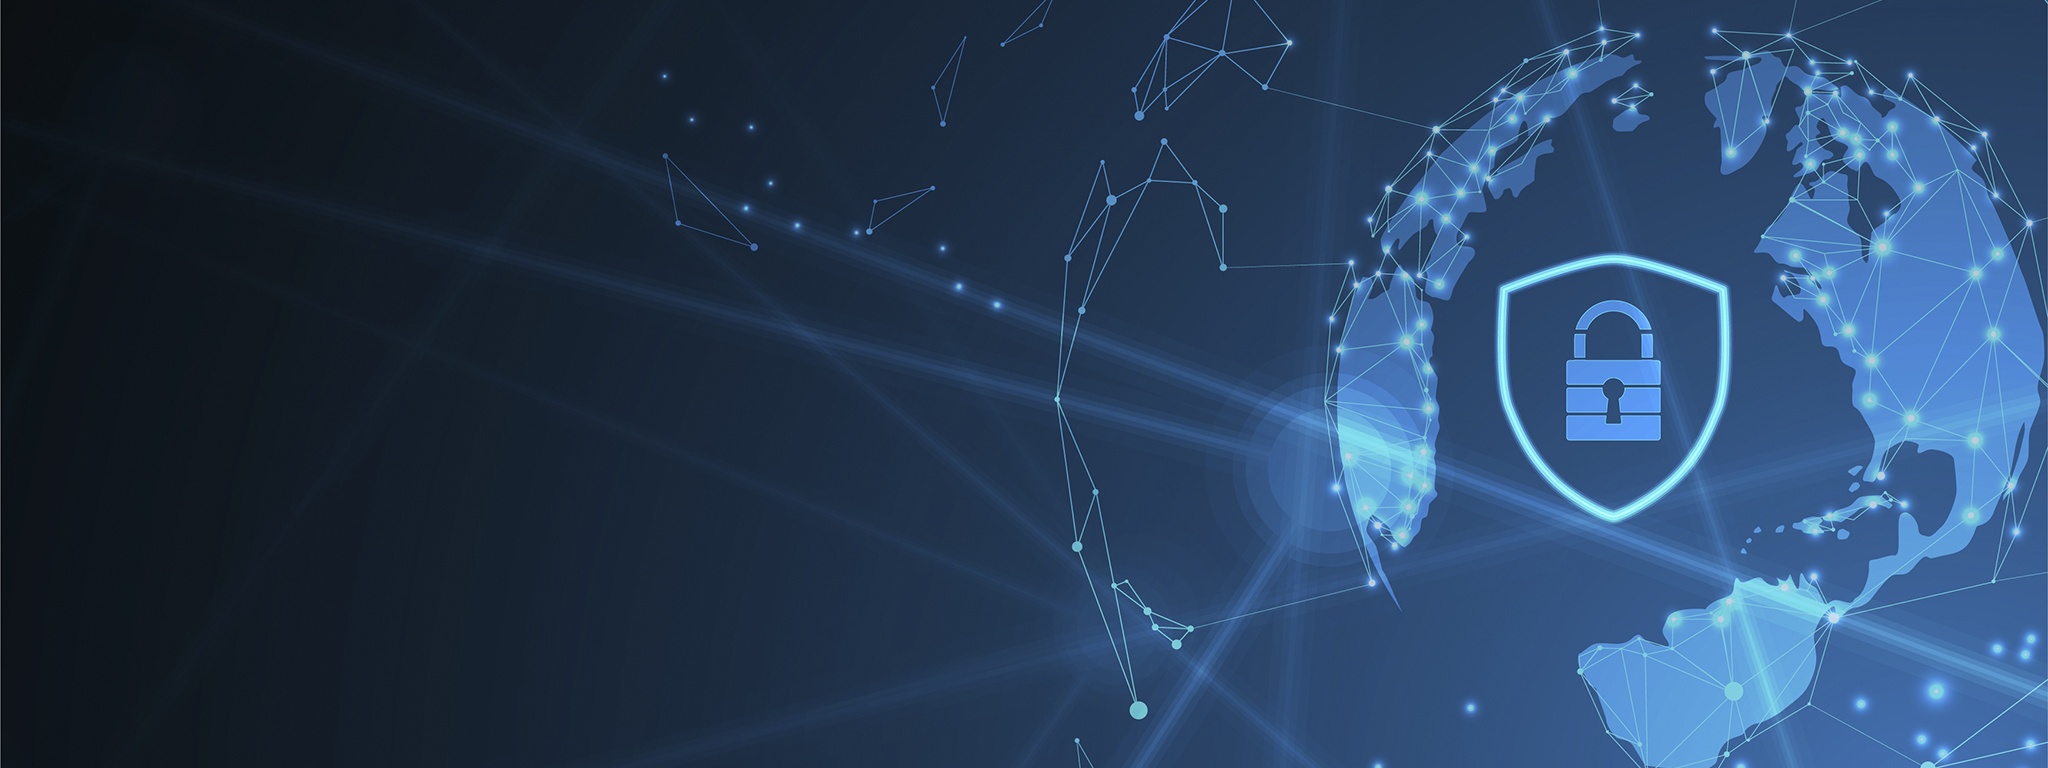 ภาพเส้นเชื่อมต่ออินเทอร์เน็ตสีน้ำเงินบนรูปโลกที่มีรูปกุญแจและโล่